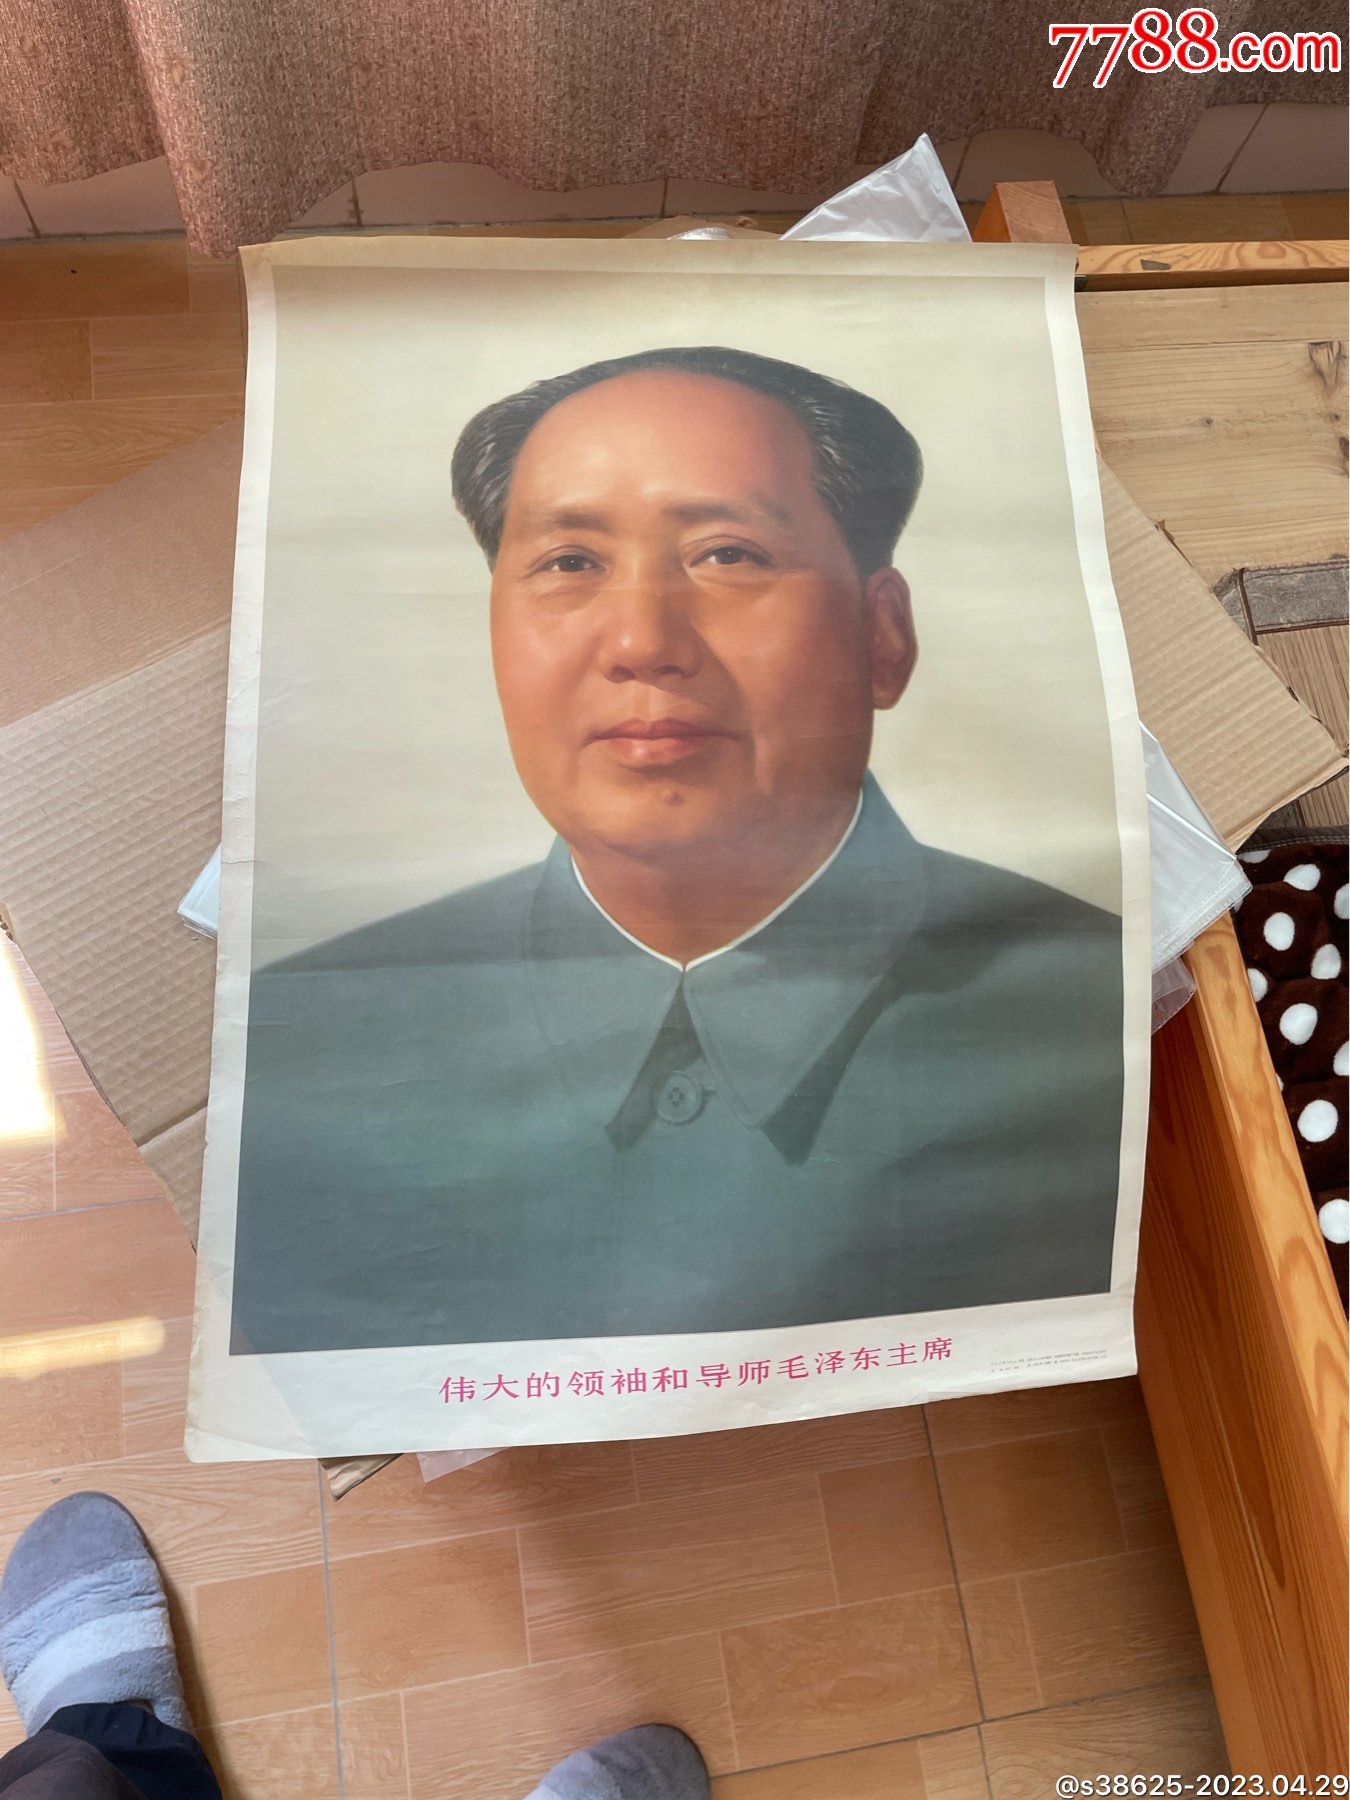 1张毛主席像伟大的领袖和导师毛泽东主席-价格:90元-au34575907-年画/宣传画 -加价-7788收藏__收藏热线